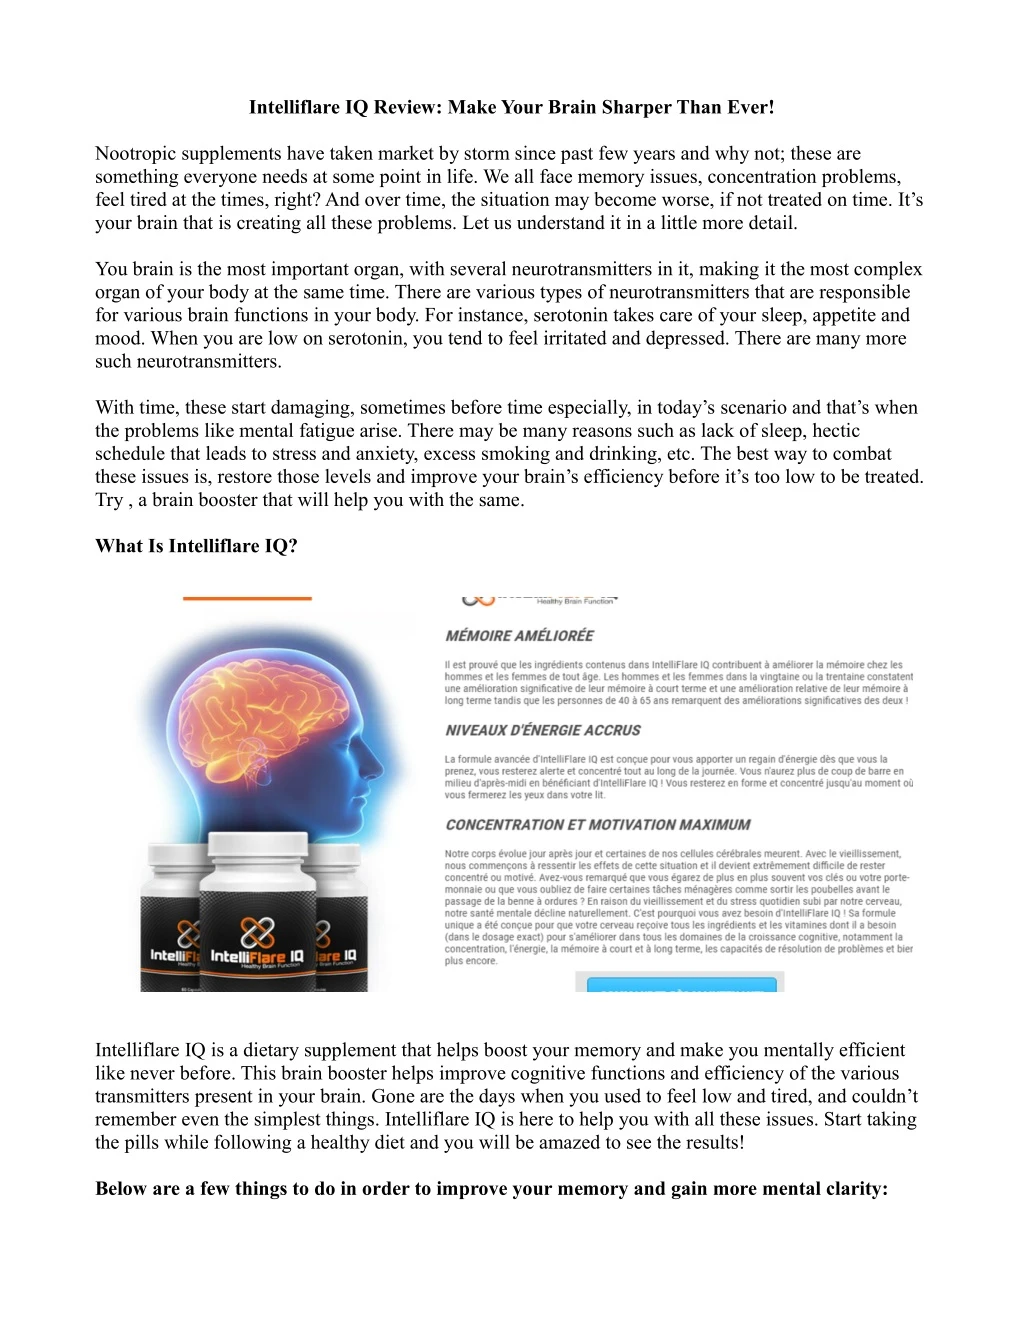 intelliflare iq review make your brain sharper